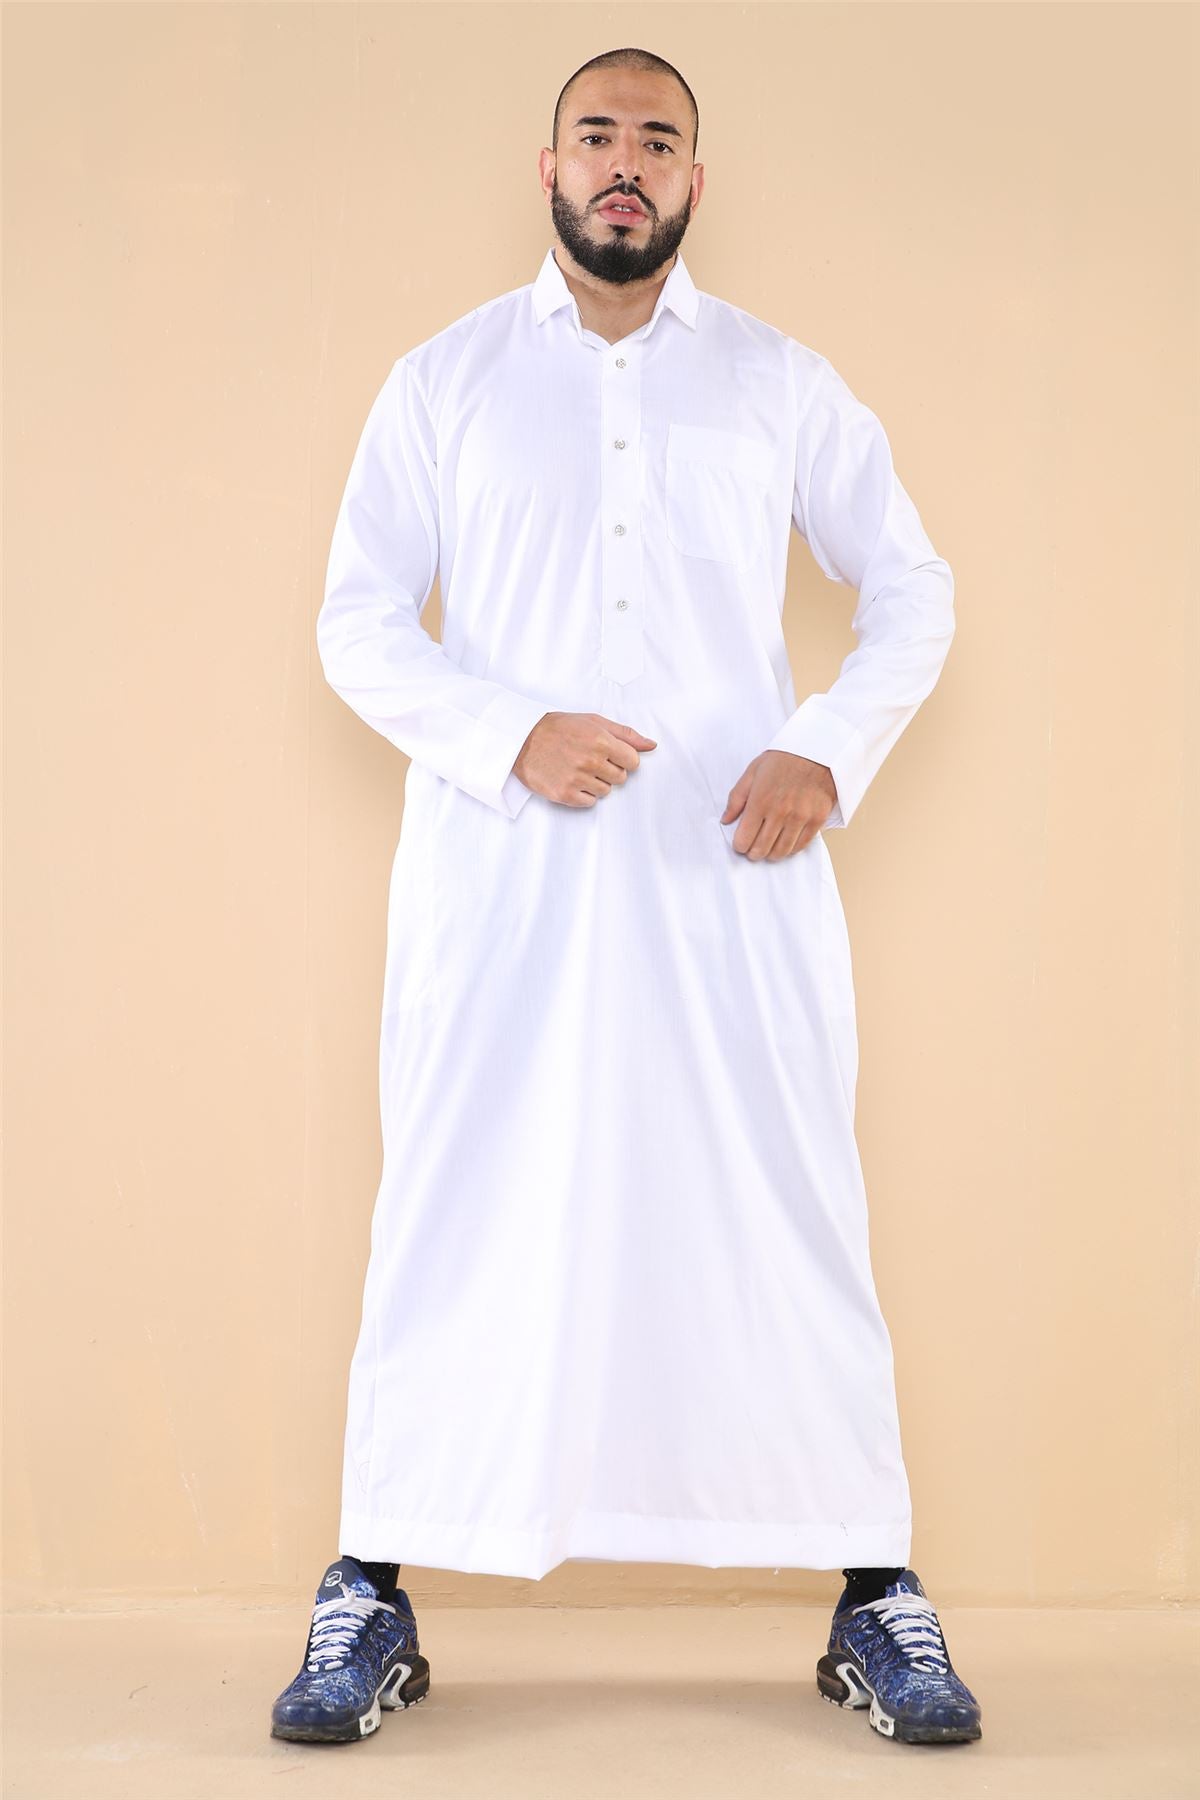 Jubba Thobe da Uomo con Colletto Rovesciato Vestito Caftano Musulmano Islamico Arabo